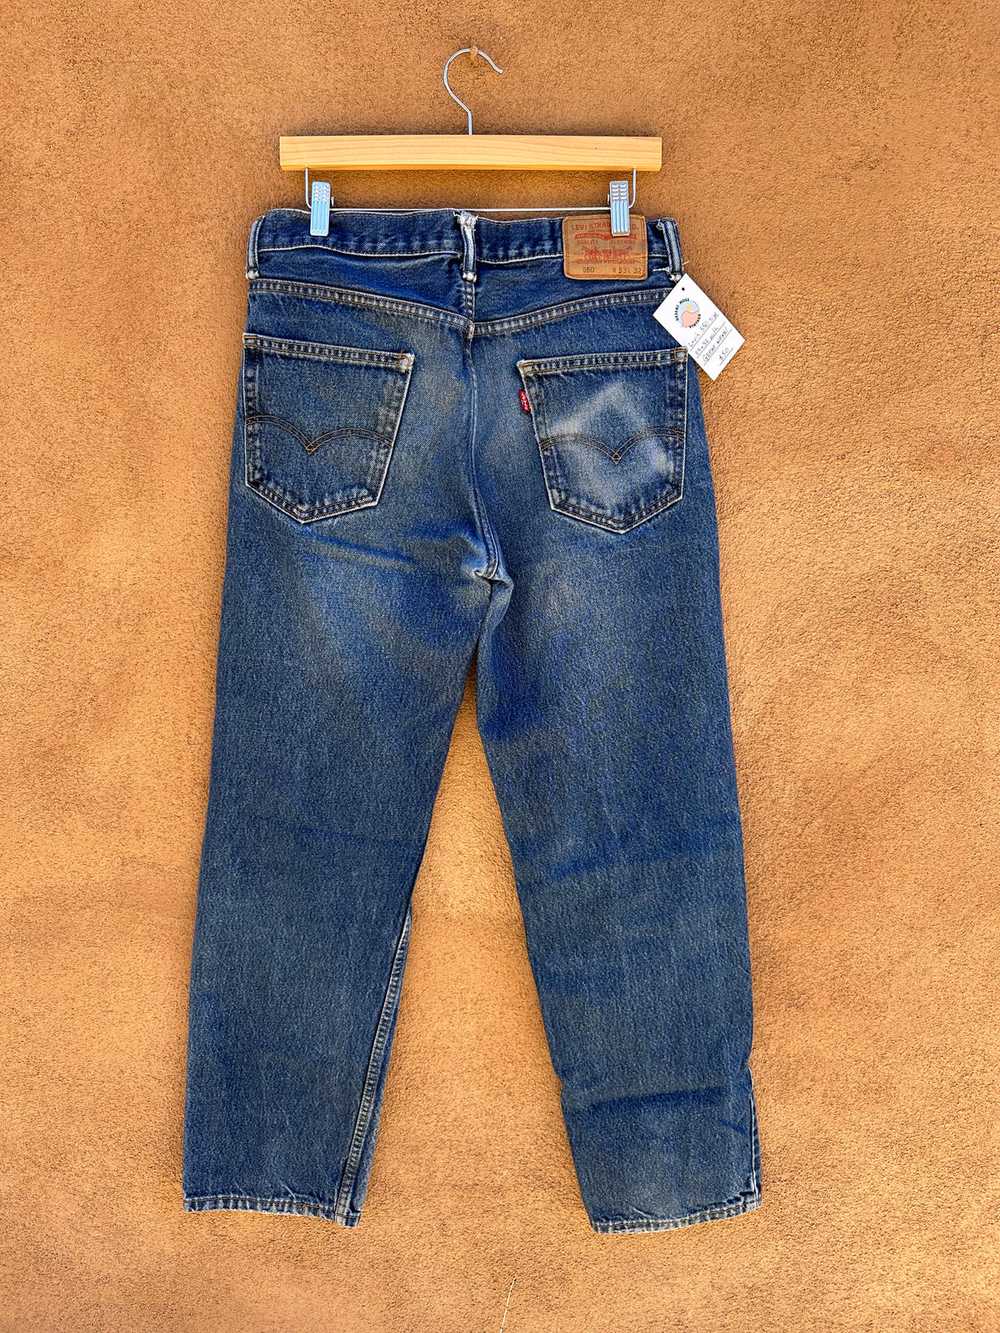 Levi's 550 Jeans 33 x 32 - image 2